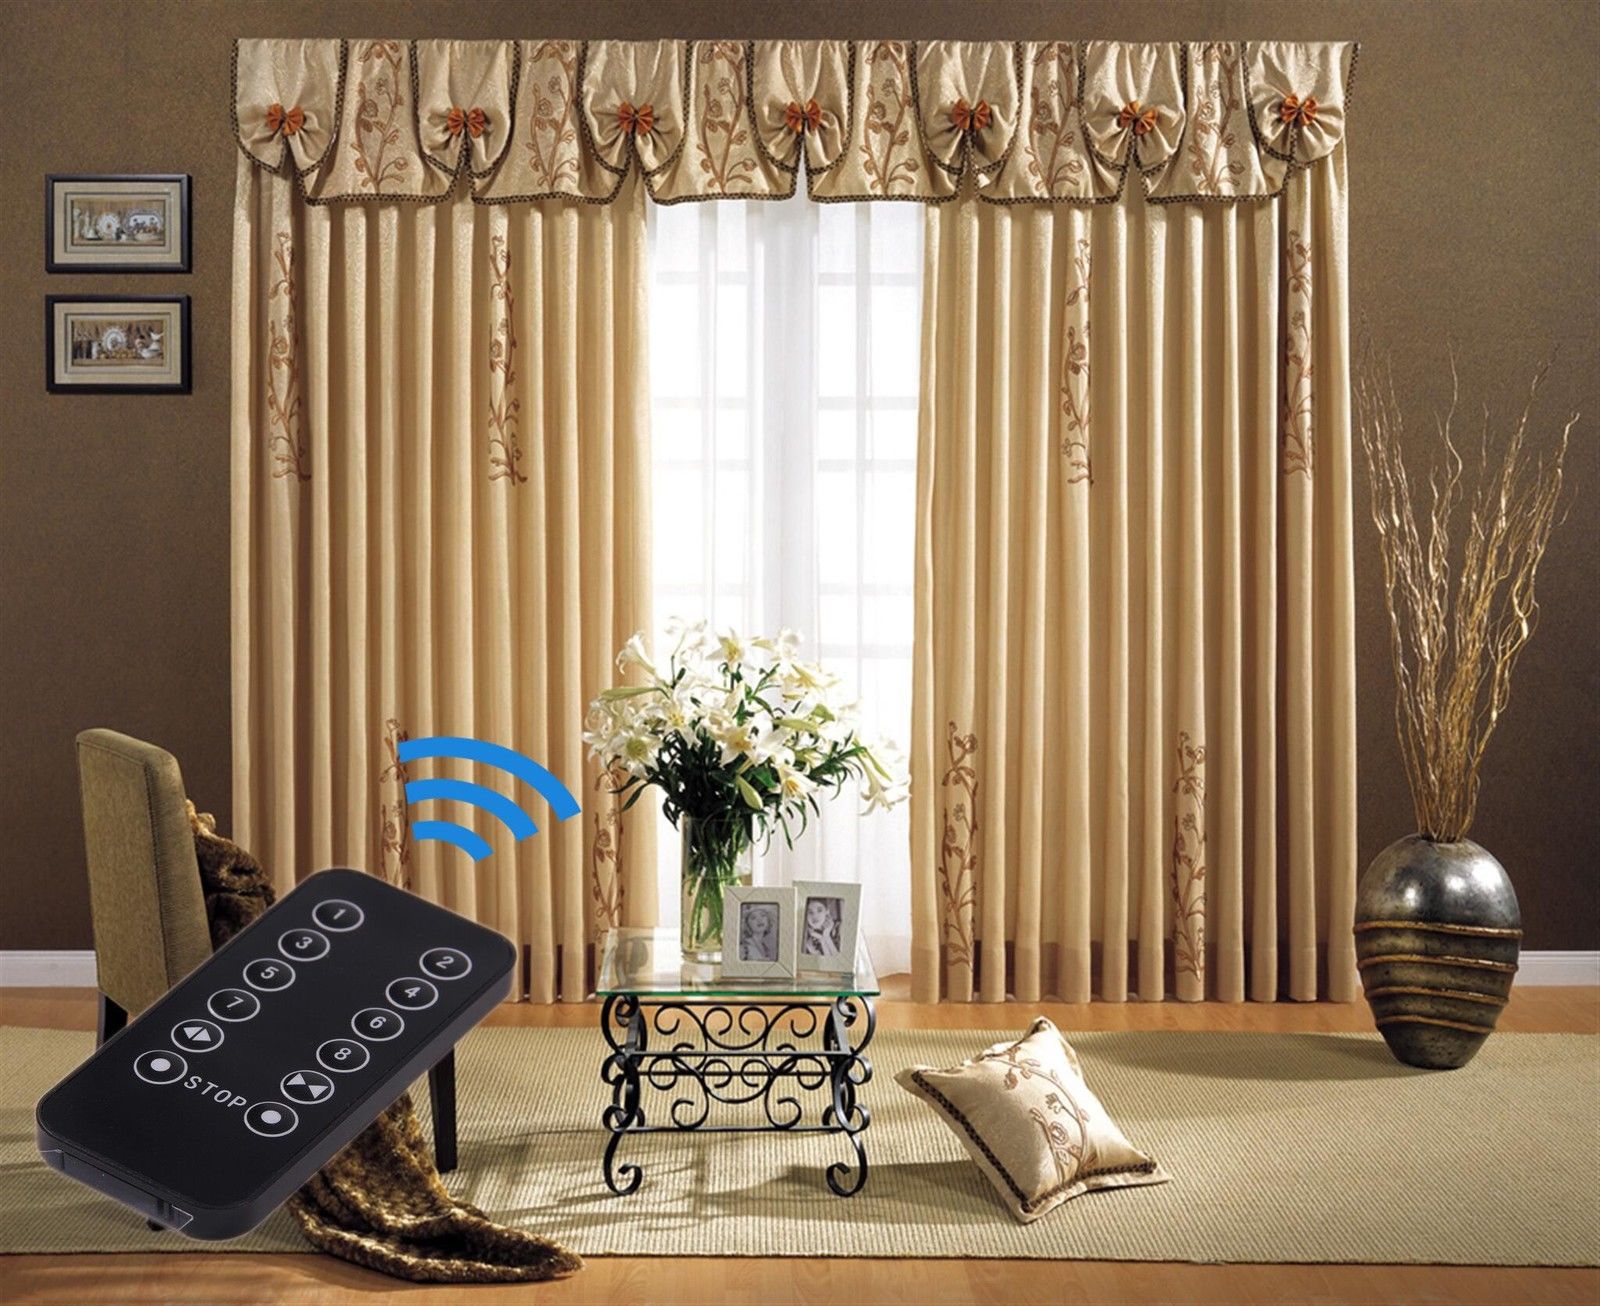 Strømcelle Fancy halvleder Curtains Dubai Made to Measure Curtains Blackout Curtains Roman Blinds